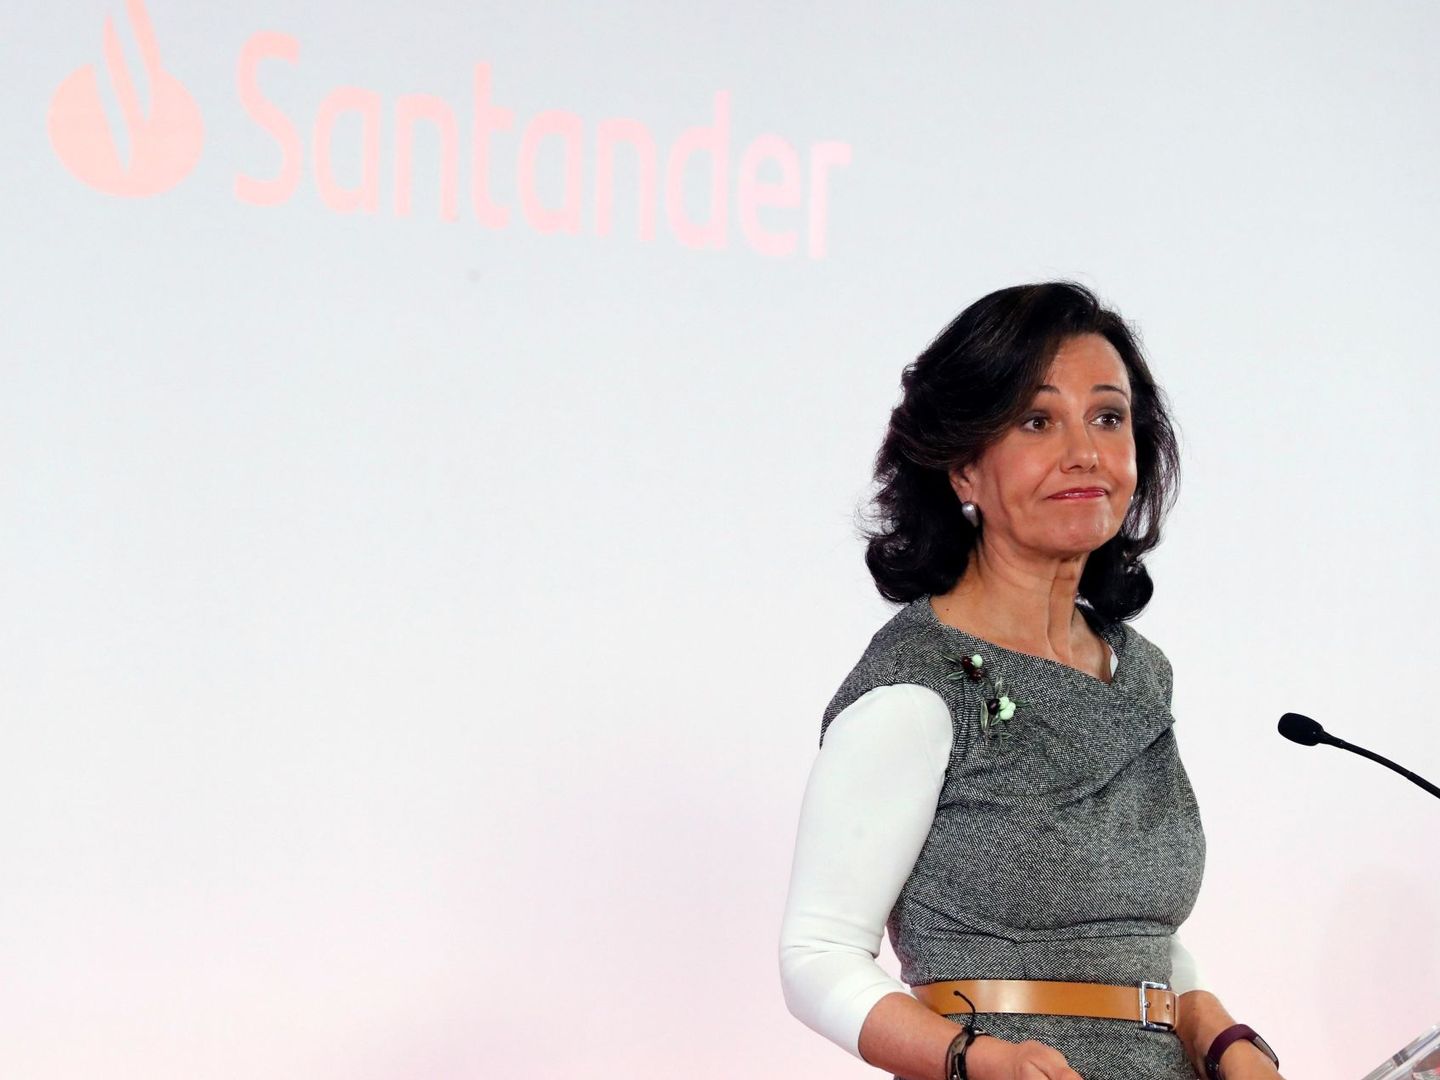 Ana Botín, presidenta del Santander